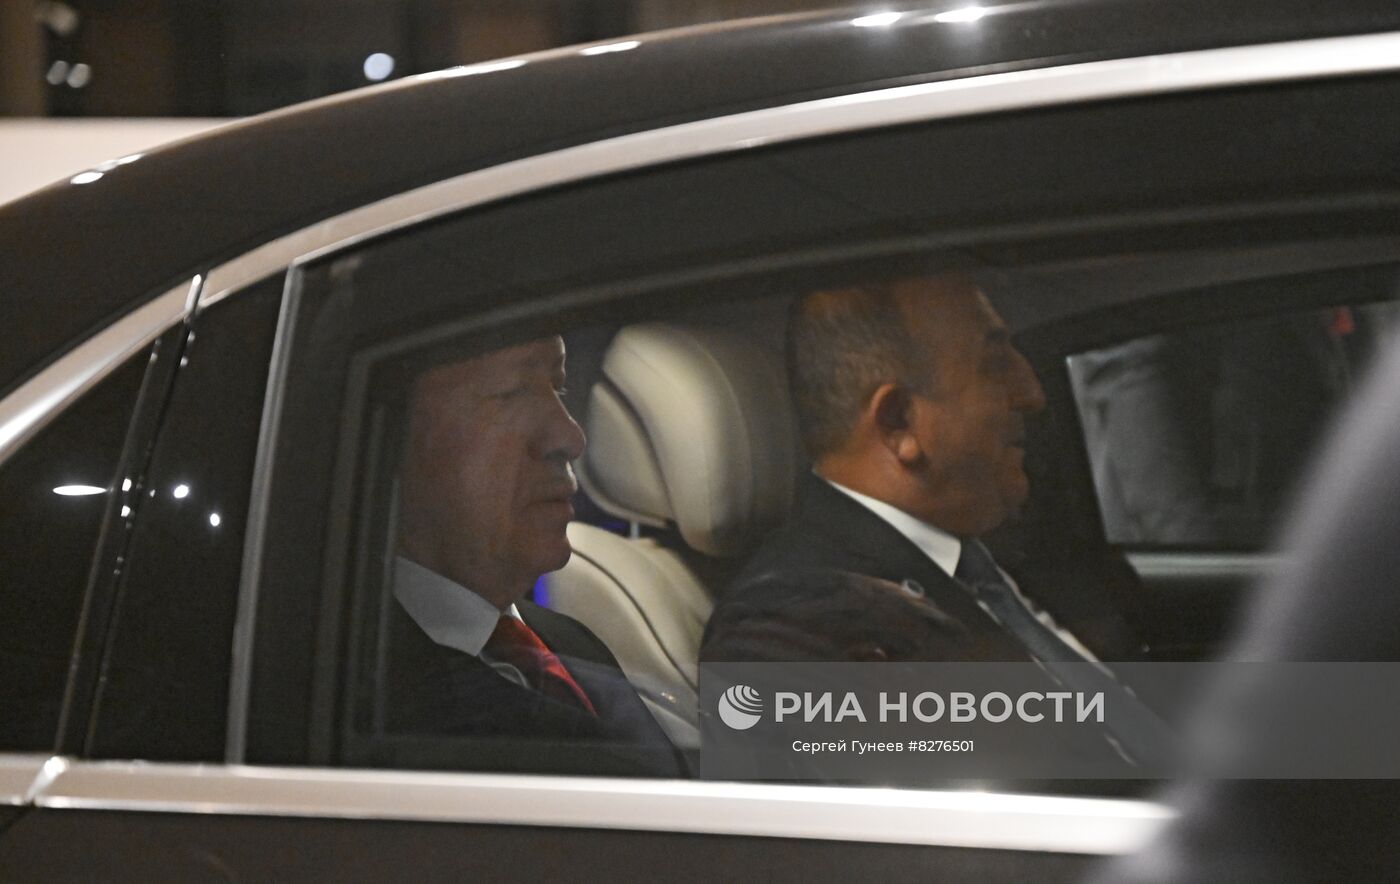 Президент РФ В. Путин принял участие в саммите ШОС